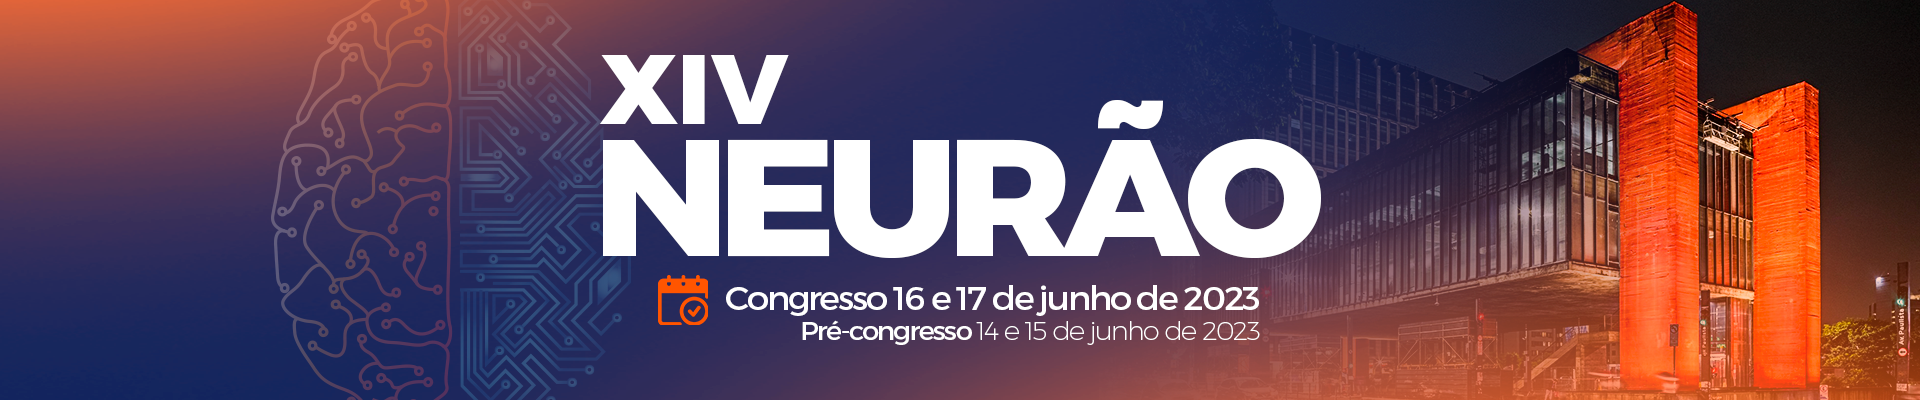 XIV Neurão – Congresso Médico da SONESP – Associação dos Neurocirurgiões do Estado de São Paulo